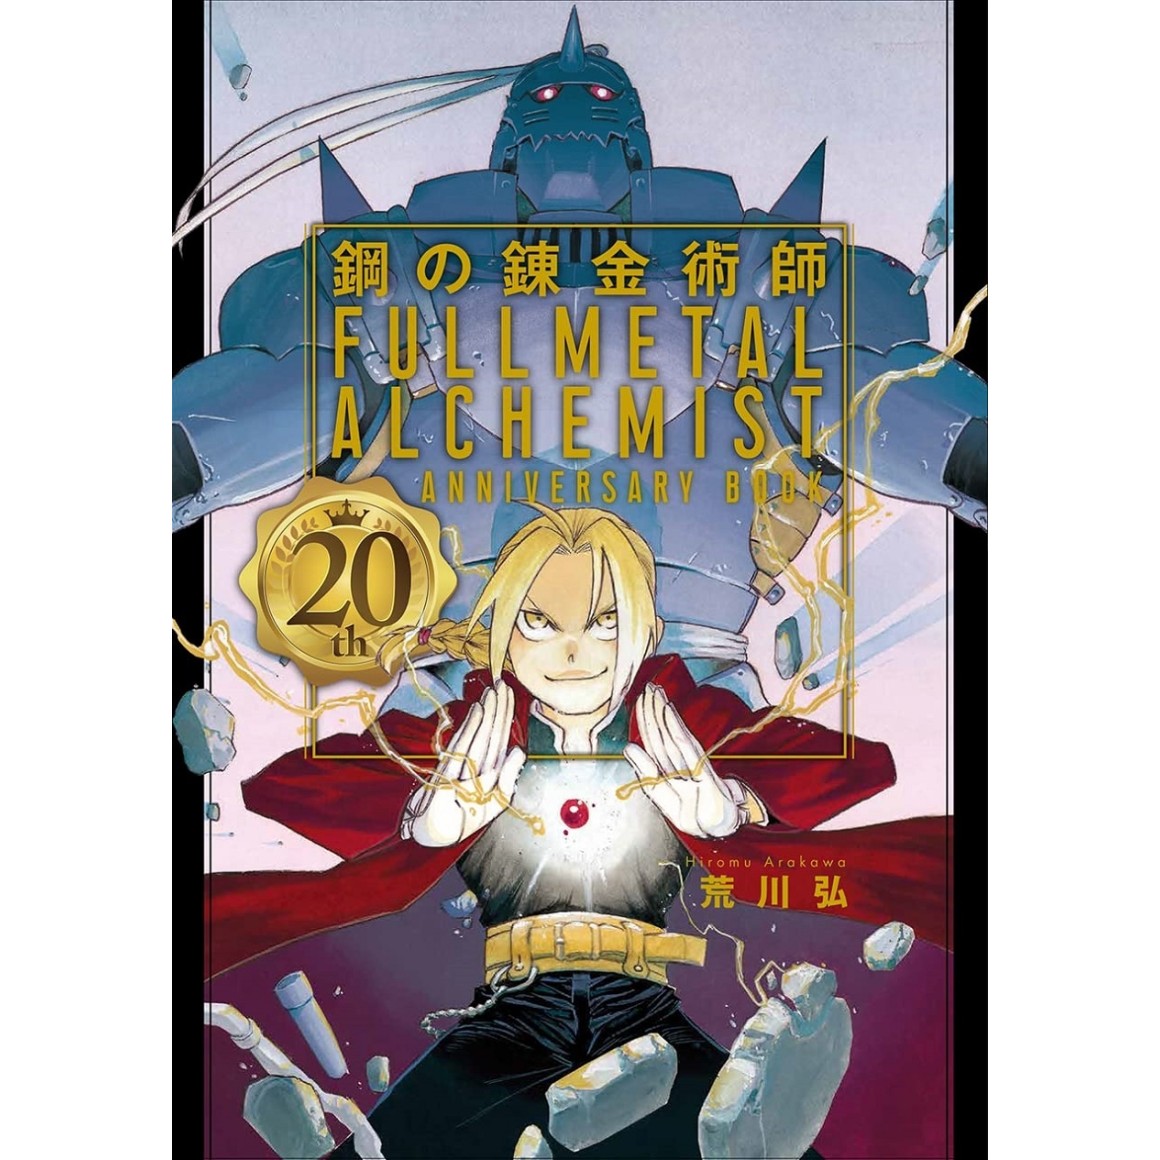 Fullmetal Alchemist - Um mangá que todos deveriam ler